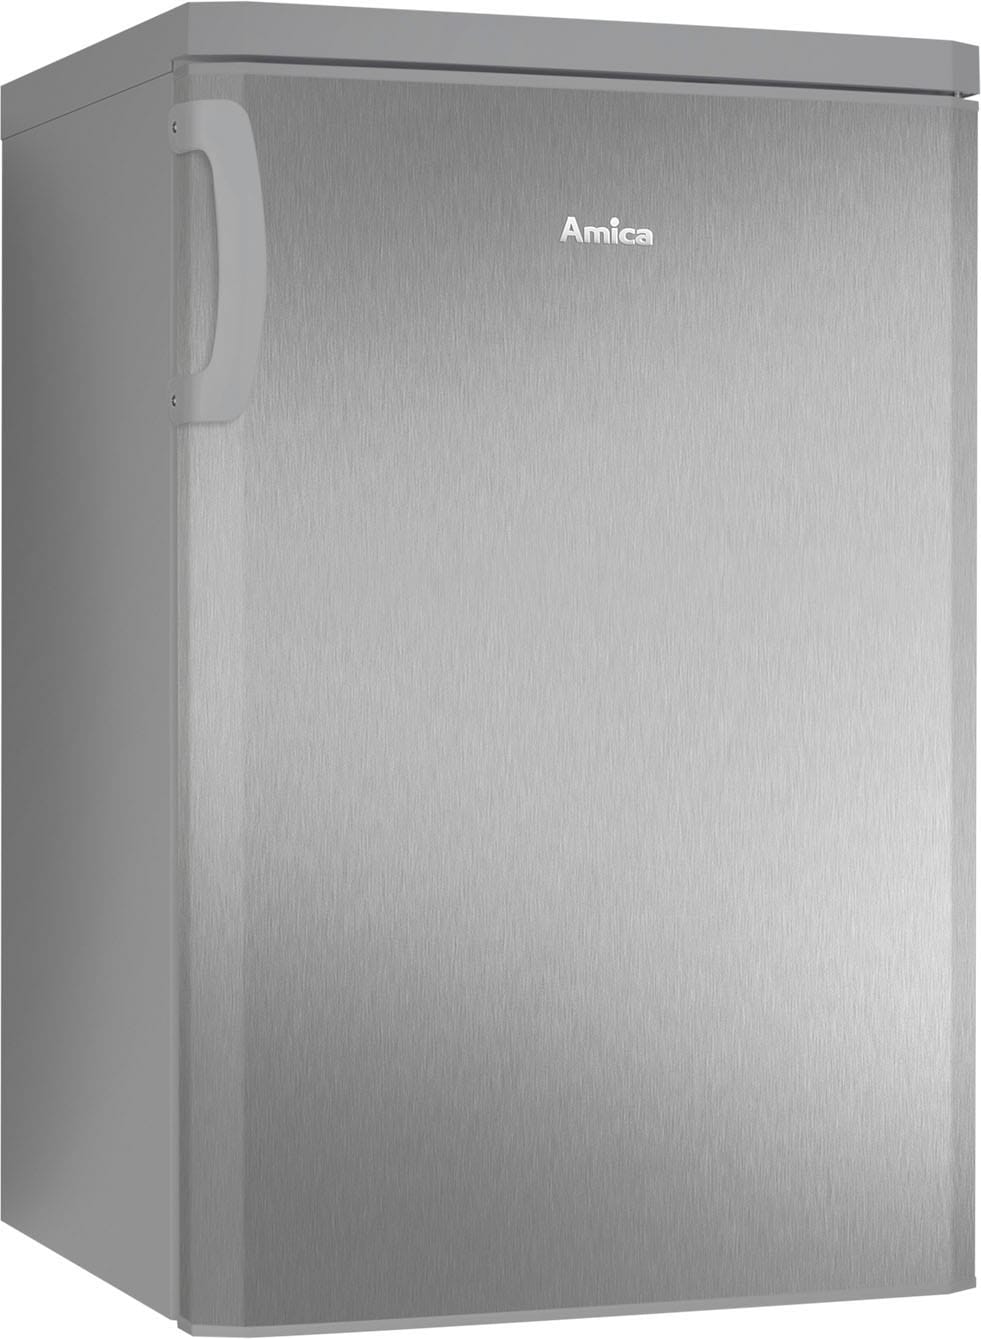 Amica Vollraumkühlschrank »VKS 351110-2 E«, VKS 351110-2 E, 84,5 cm hoch,  55 cm breit mit 3 Jahren XXL Garantie